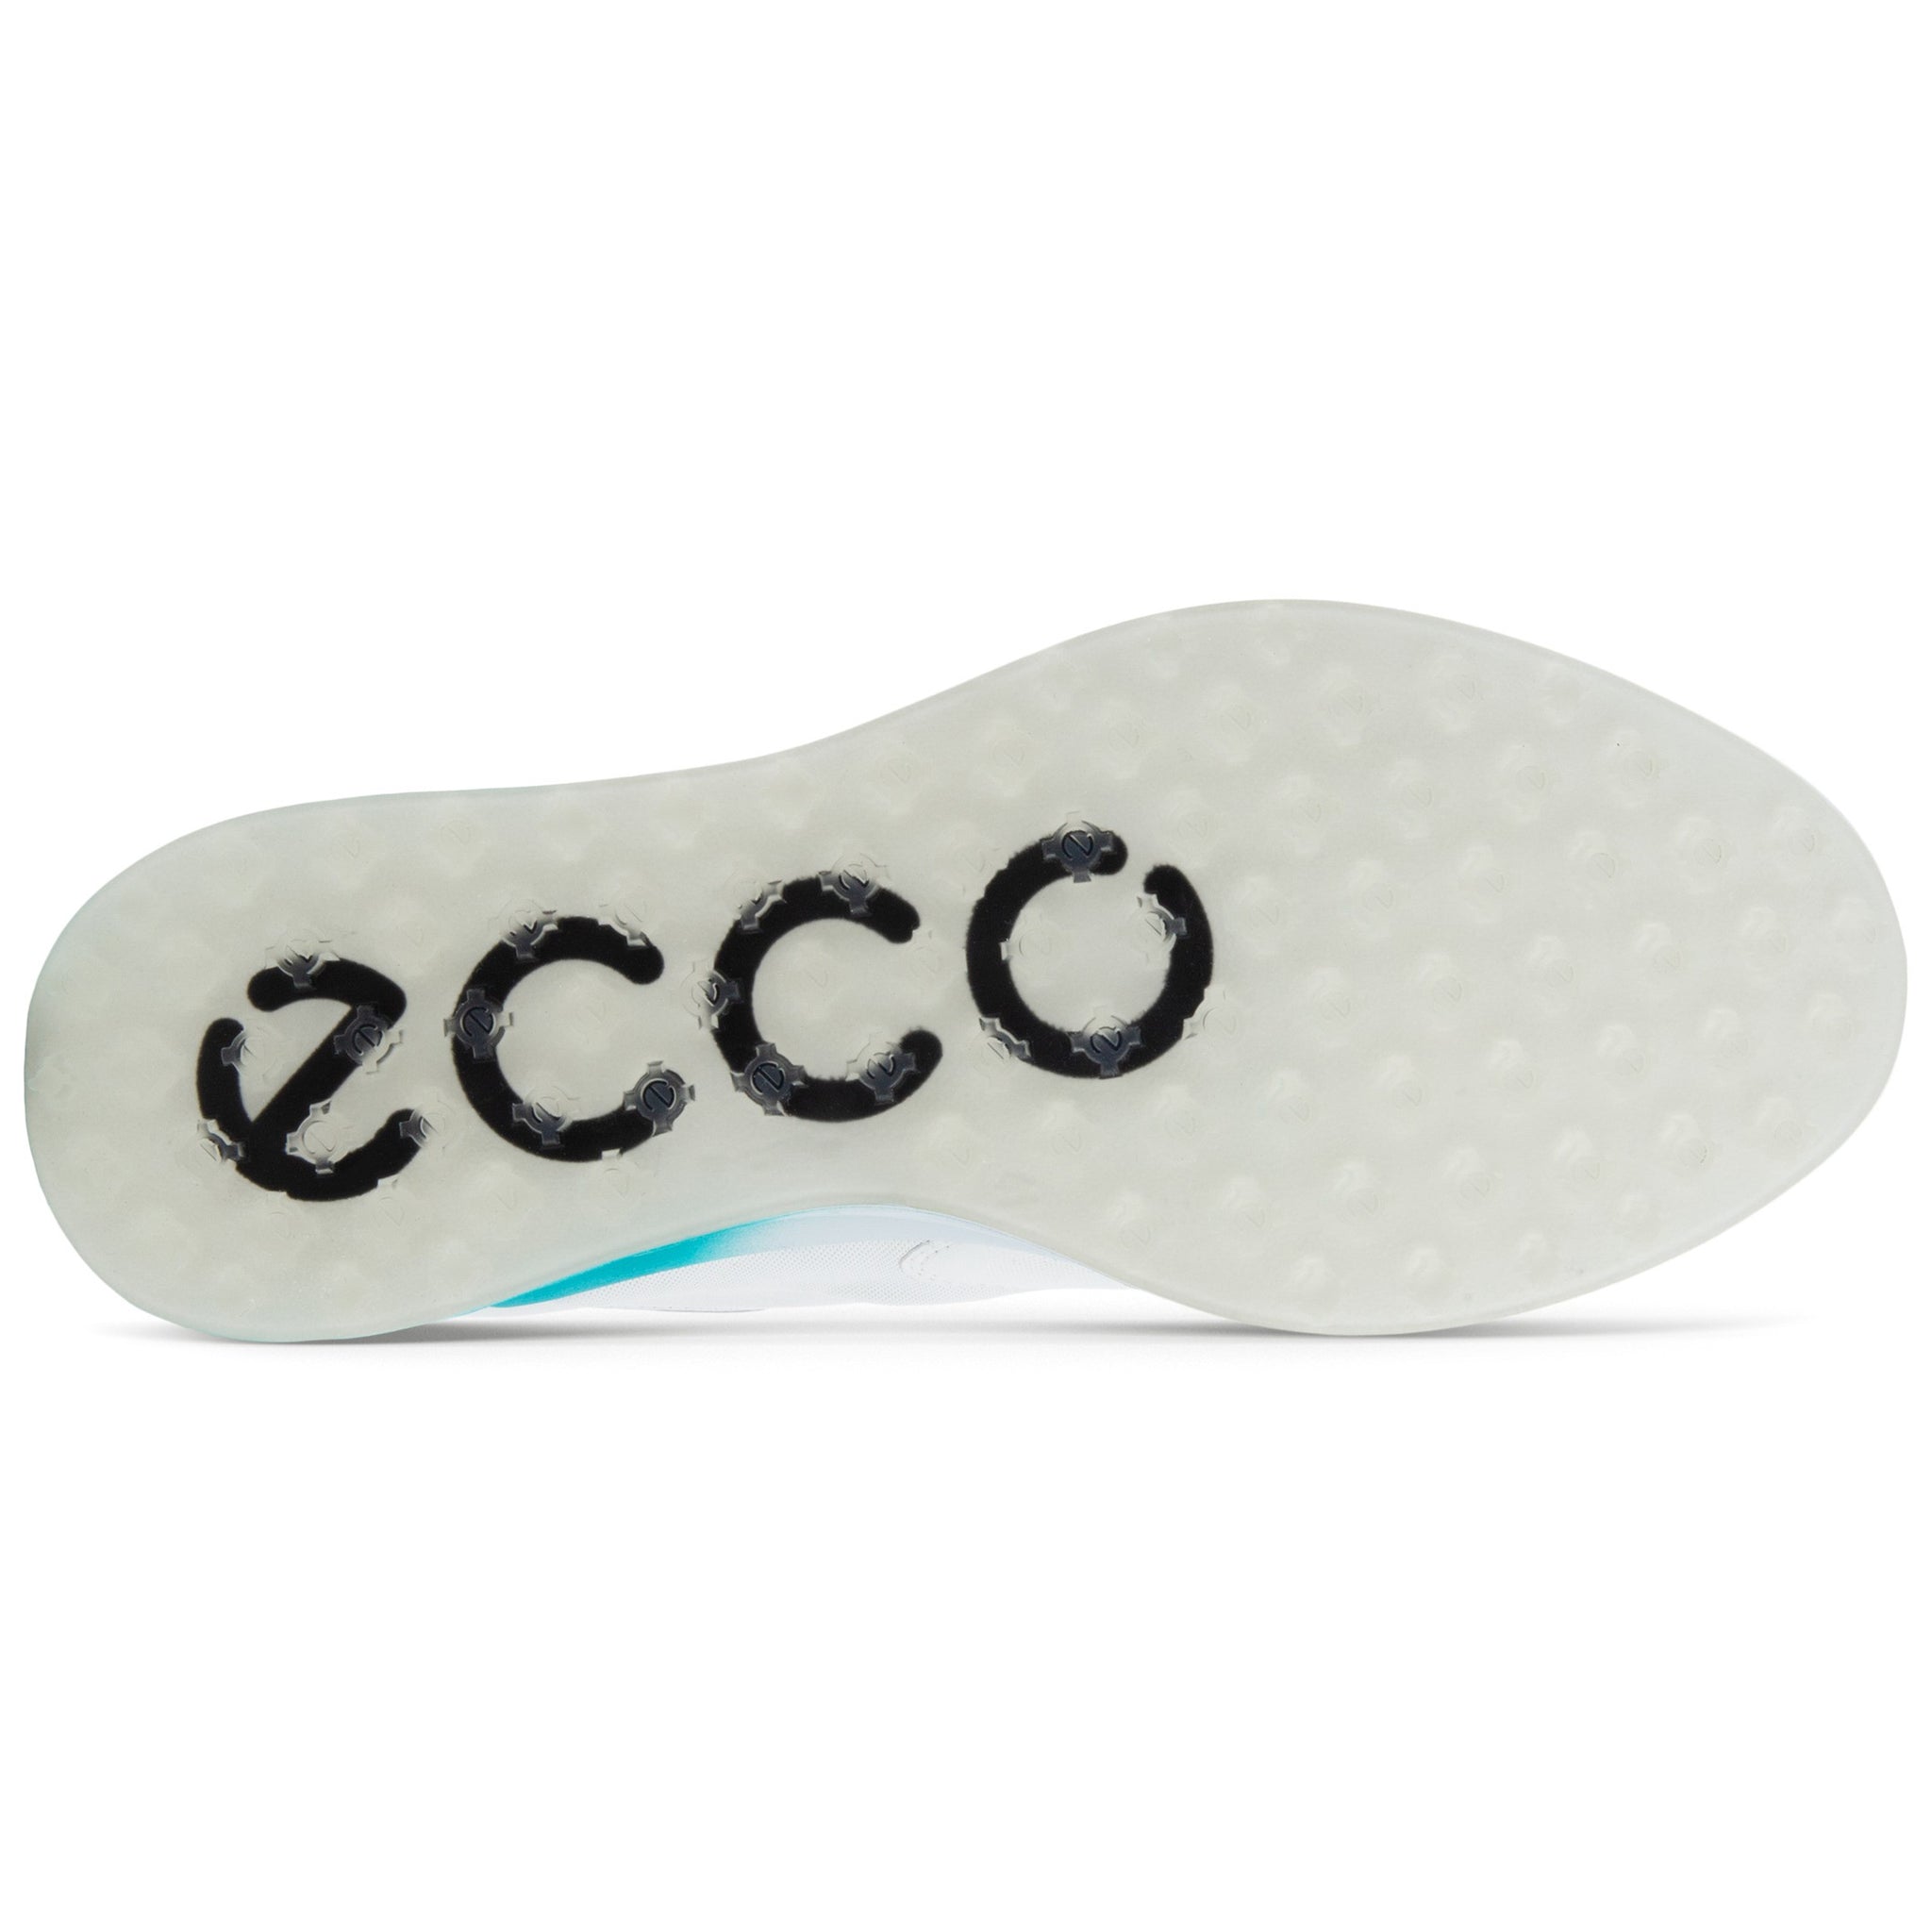 ecco-s-three-gore-tex-boa-golf-shoes-102954-white-caribbean-concrete-60628